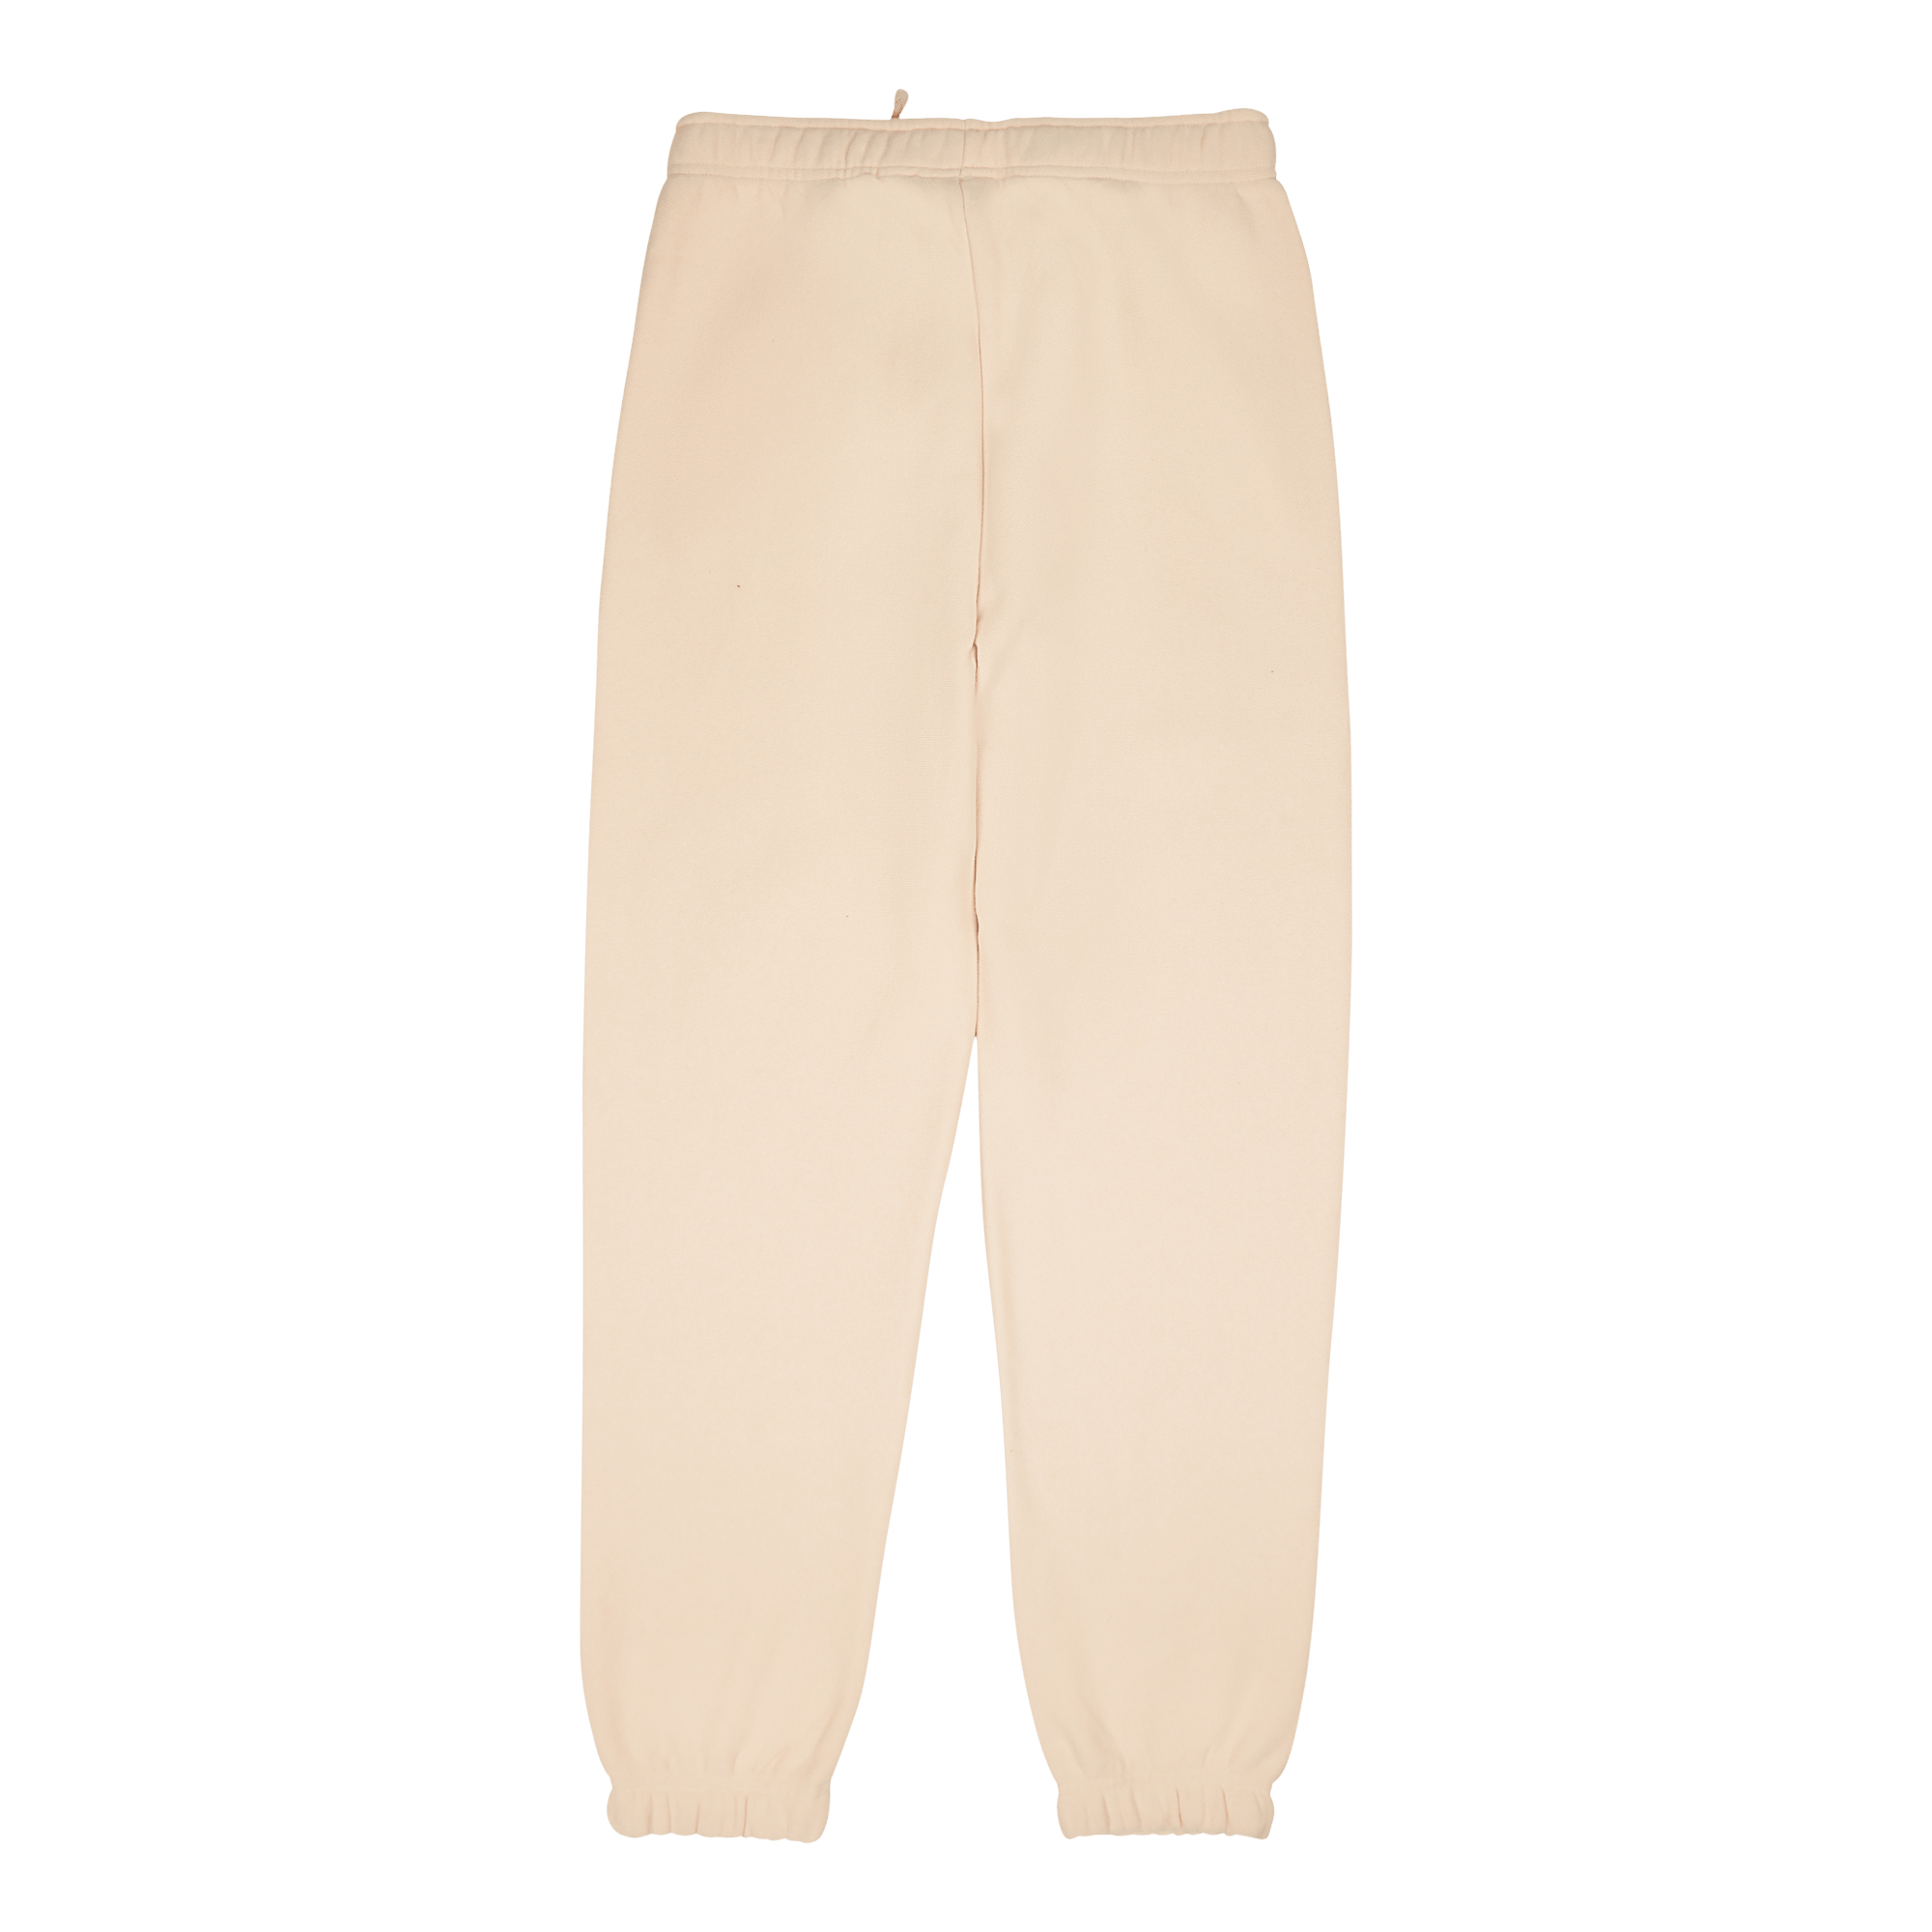 Elastic Cuff Pants Pastel Rose Tan